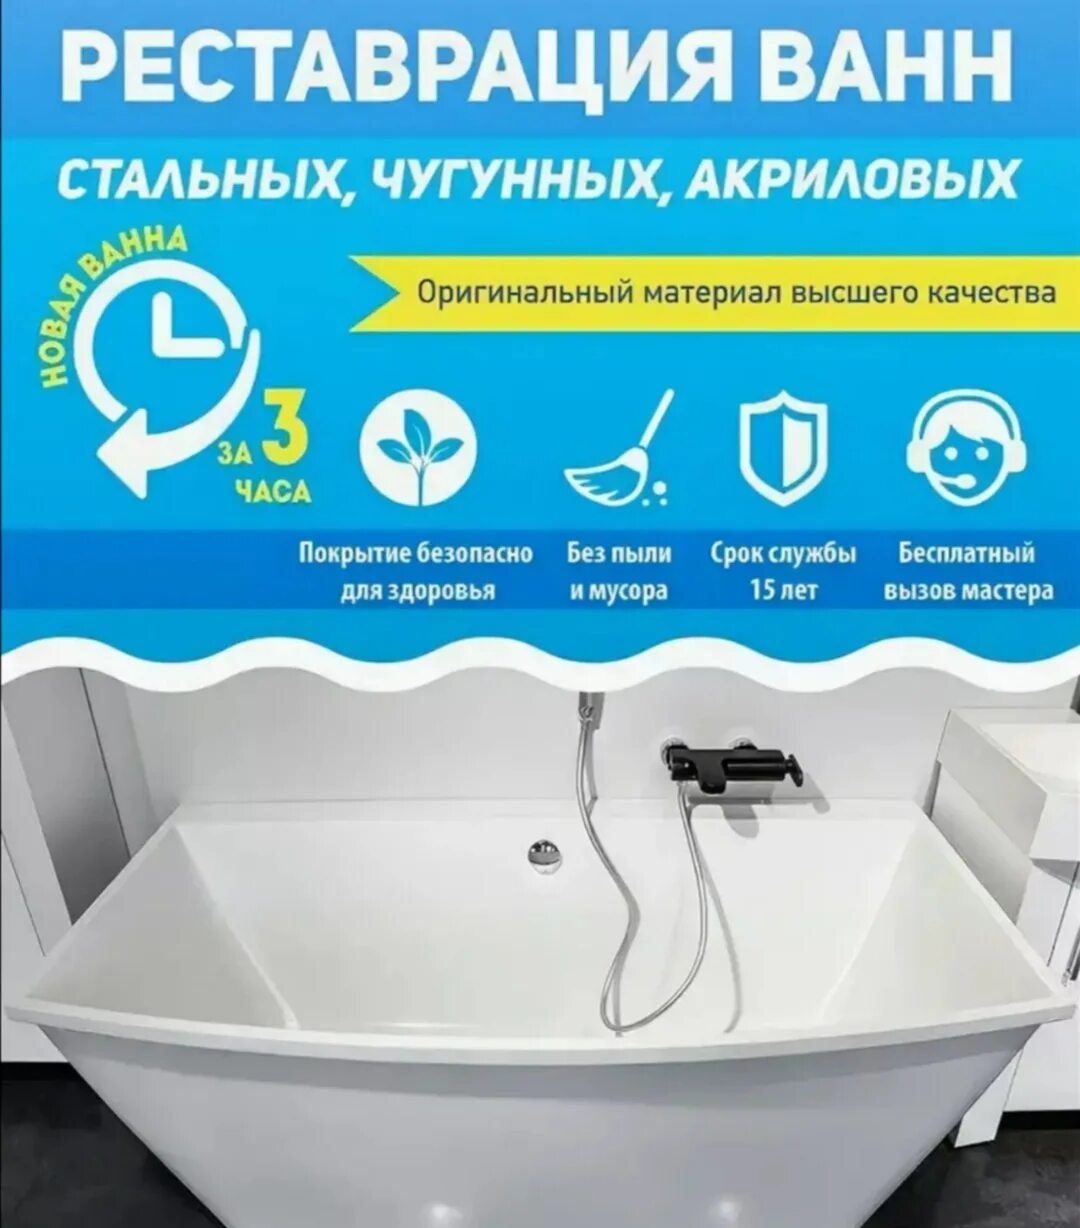 Реставрация ванн. Реставрация ванн реклама. Реставрация ванн акрилом. Реставрация ванн листовка. Wanna сайт